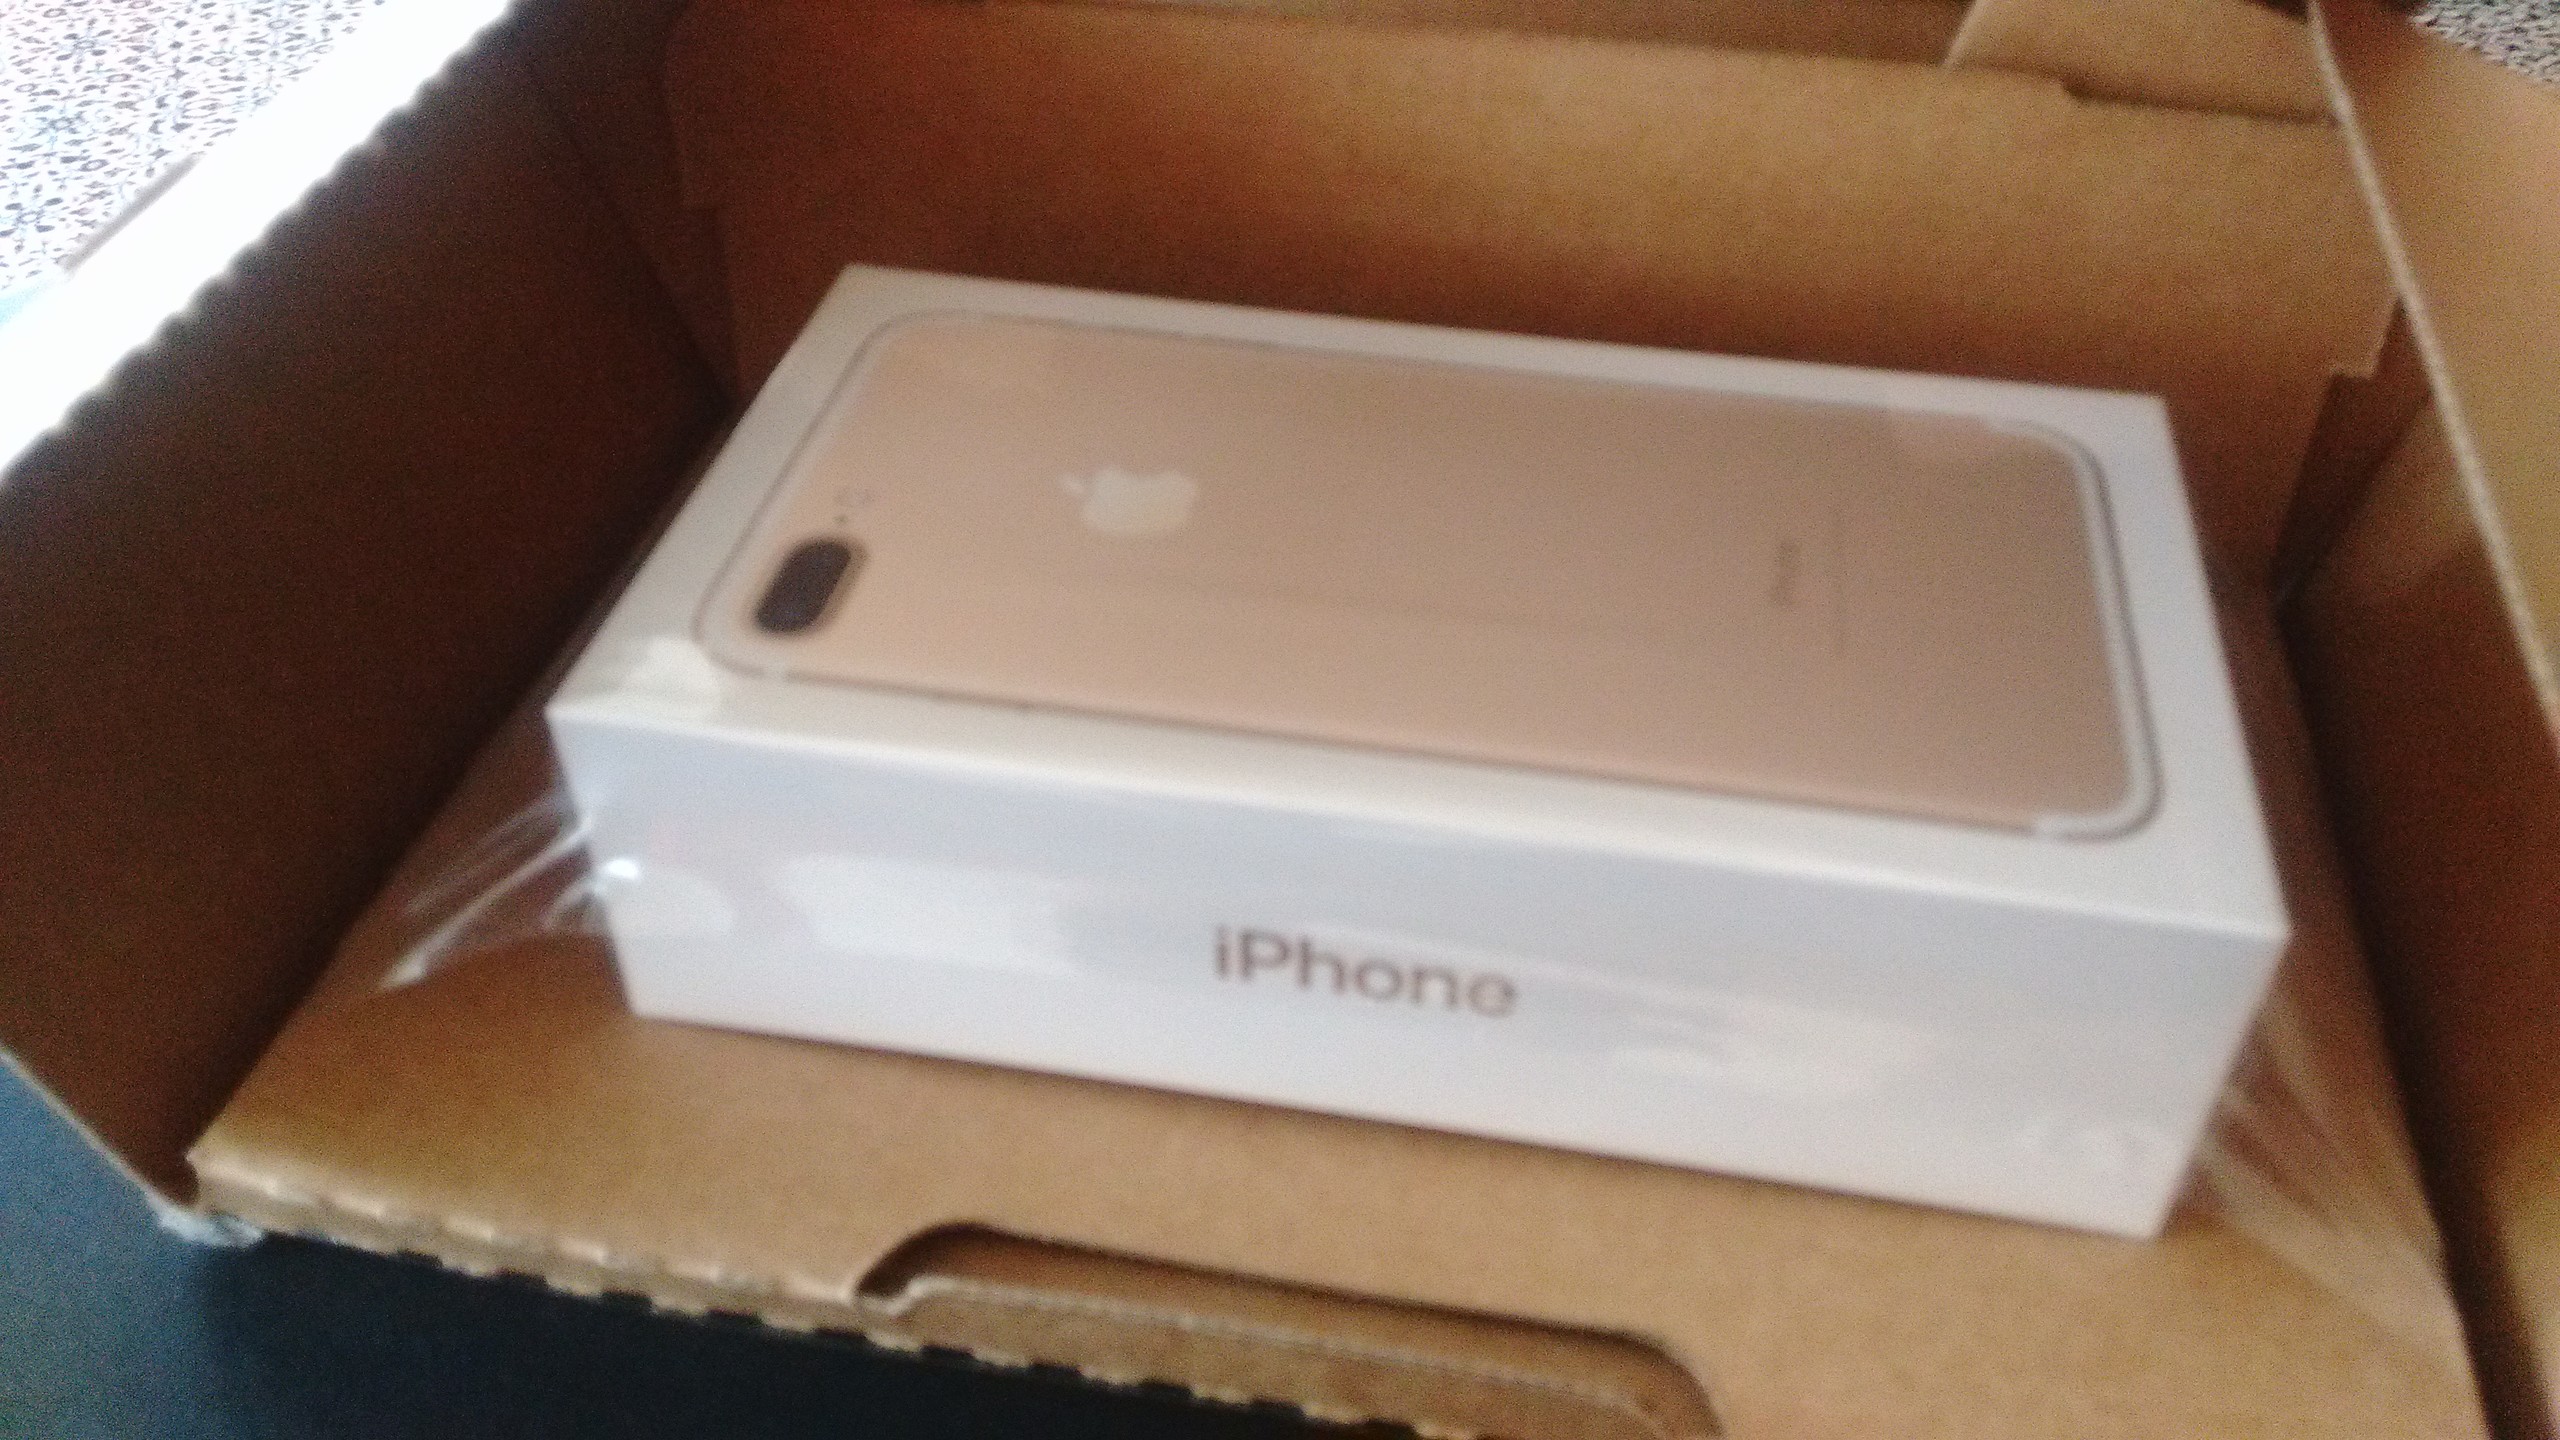 Apple online Store'dan alınma 7 PLus:IMEI kayıt dışı! 45 gün sonra yeni,kapalı kutu telefon geldi.